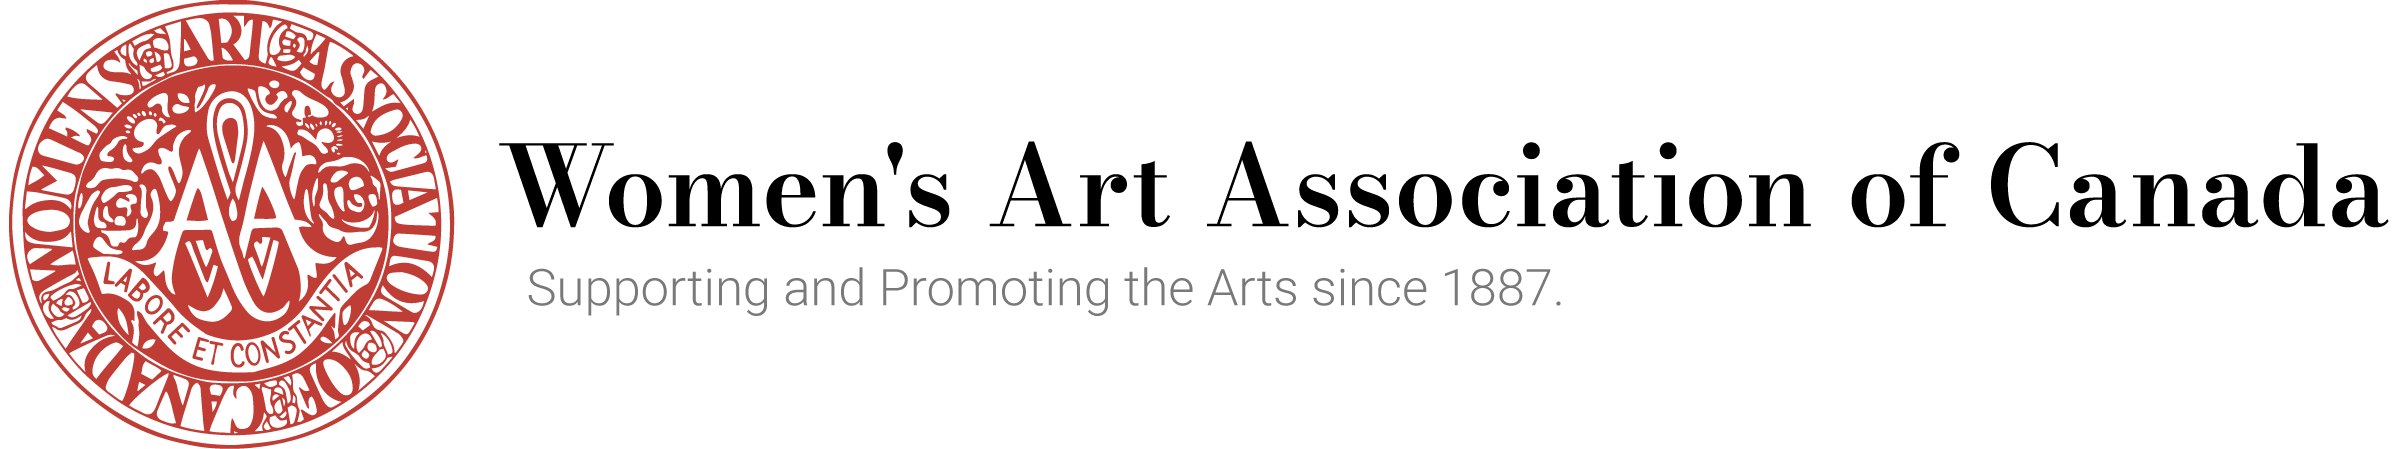 Women's Art Association of Canada Logo